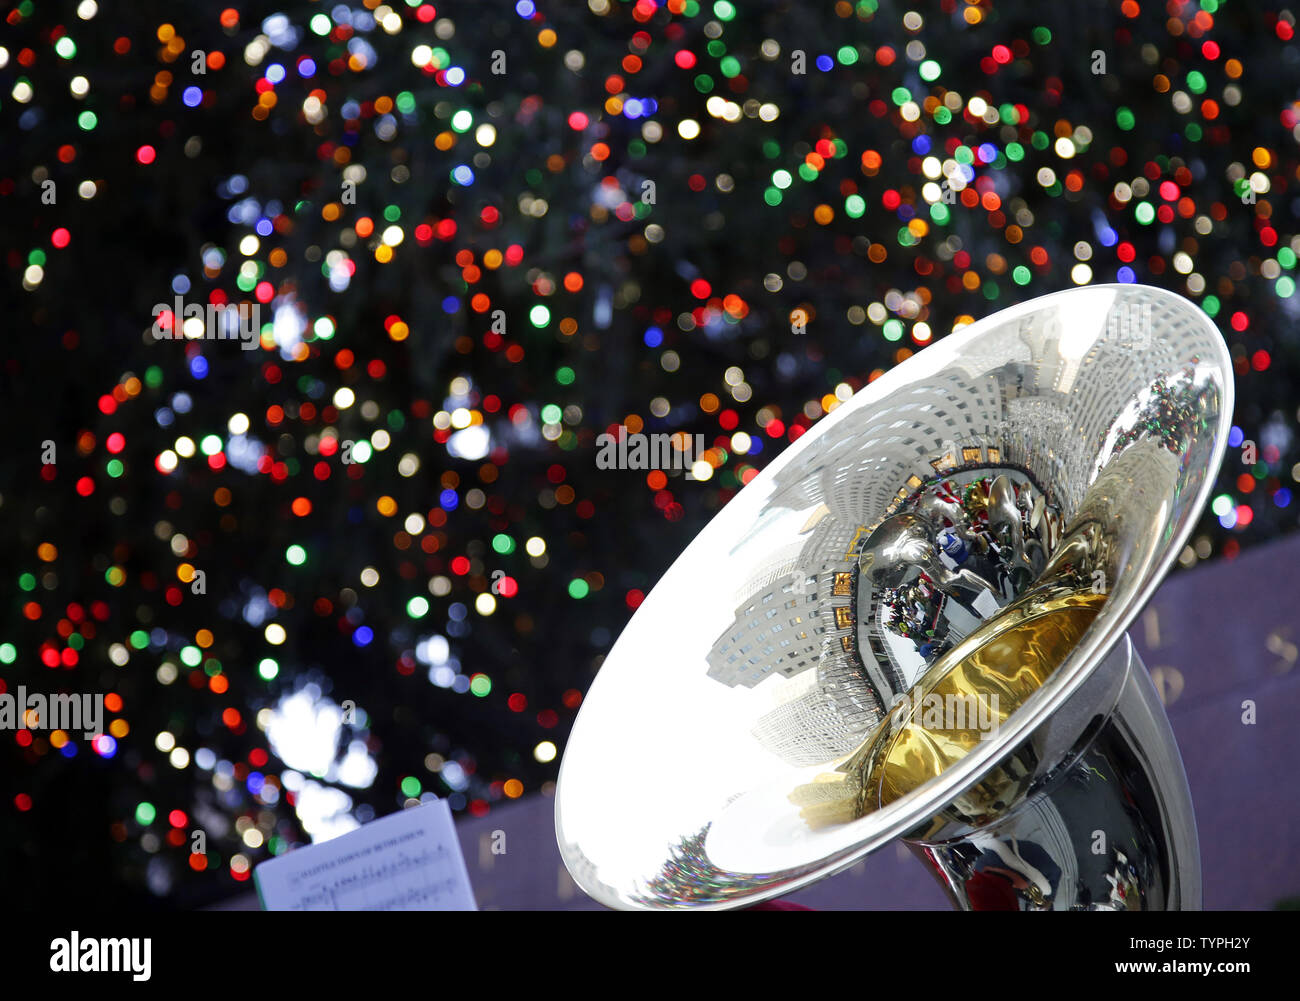 Hunderte von Tenor und Bass Tuba Spieler versammeln sich auf der Eisbahn unter dem Rockefeller Center Weihnachtsbaum Weihnachtslieder und andere publikumslieblinge in New York City am 14. Dezember 2014 zu spielen. Die Musiker waren von Chris Wilhjelm, Dirigent des berühmten Goldman Band geführt. Die erste Tuba Weihnachten war am Rockefeller Center 1974 vorgestellt und diese Weihnachten Tradition fest in über 200 Städten auf der ganzen Welt etabliert. UPI/John angelillo Stockfoto